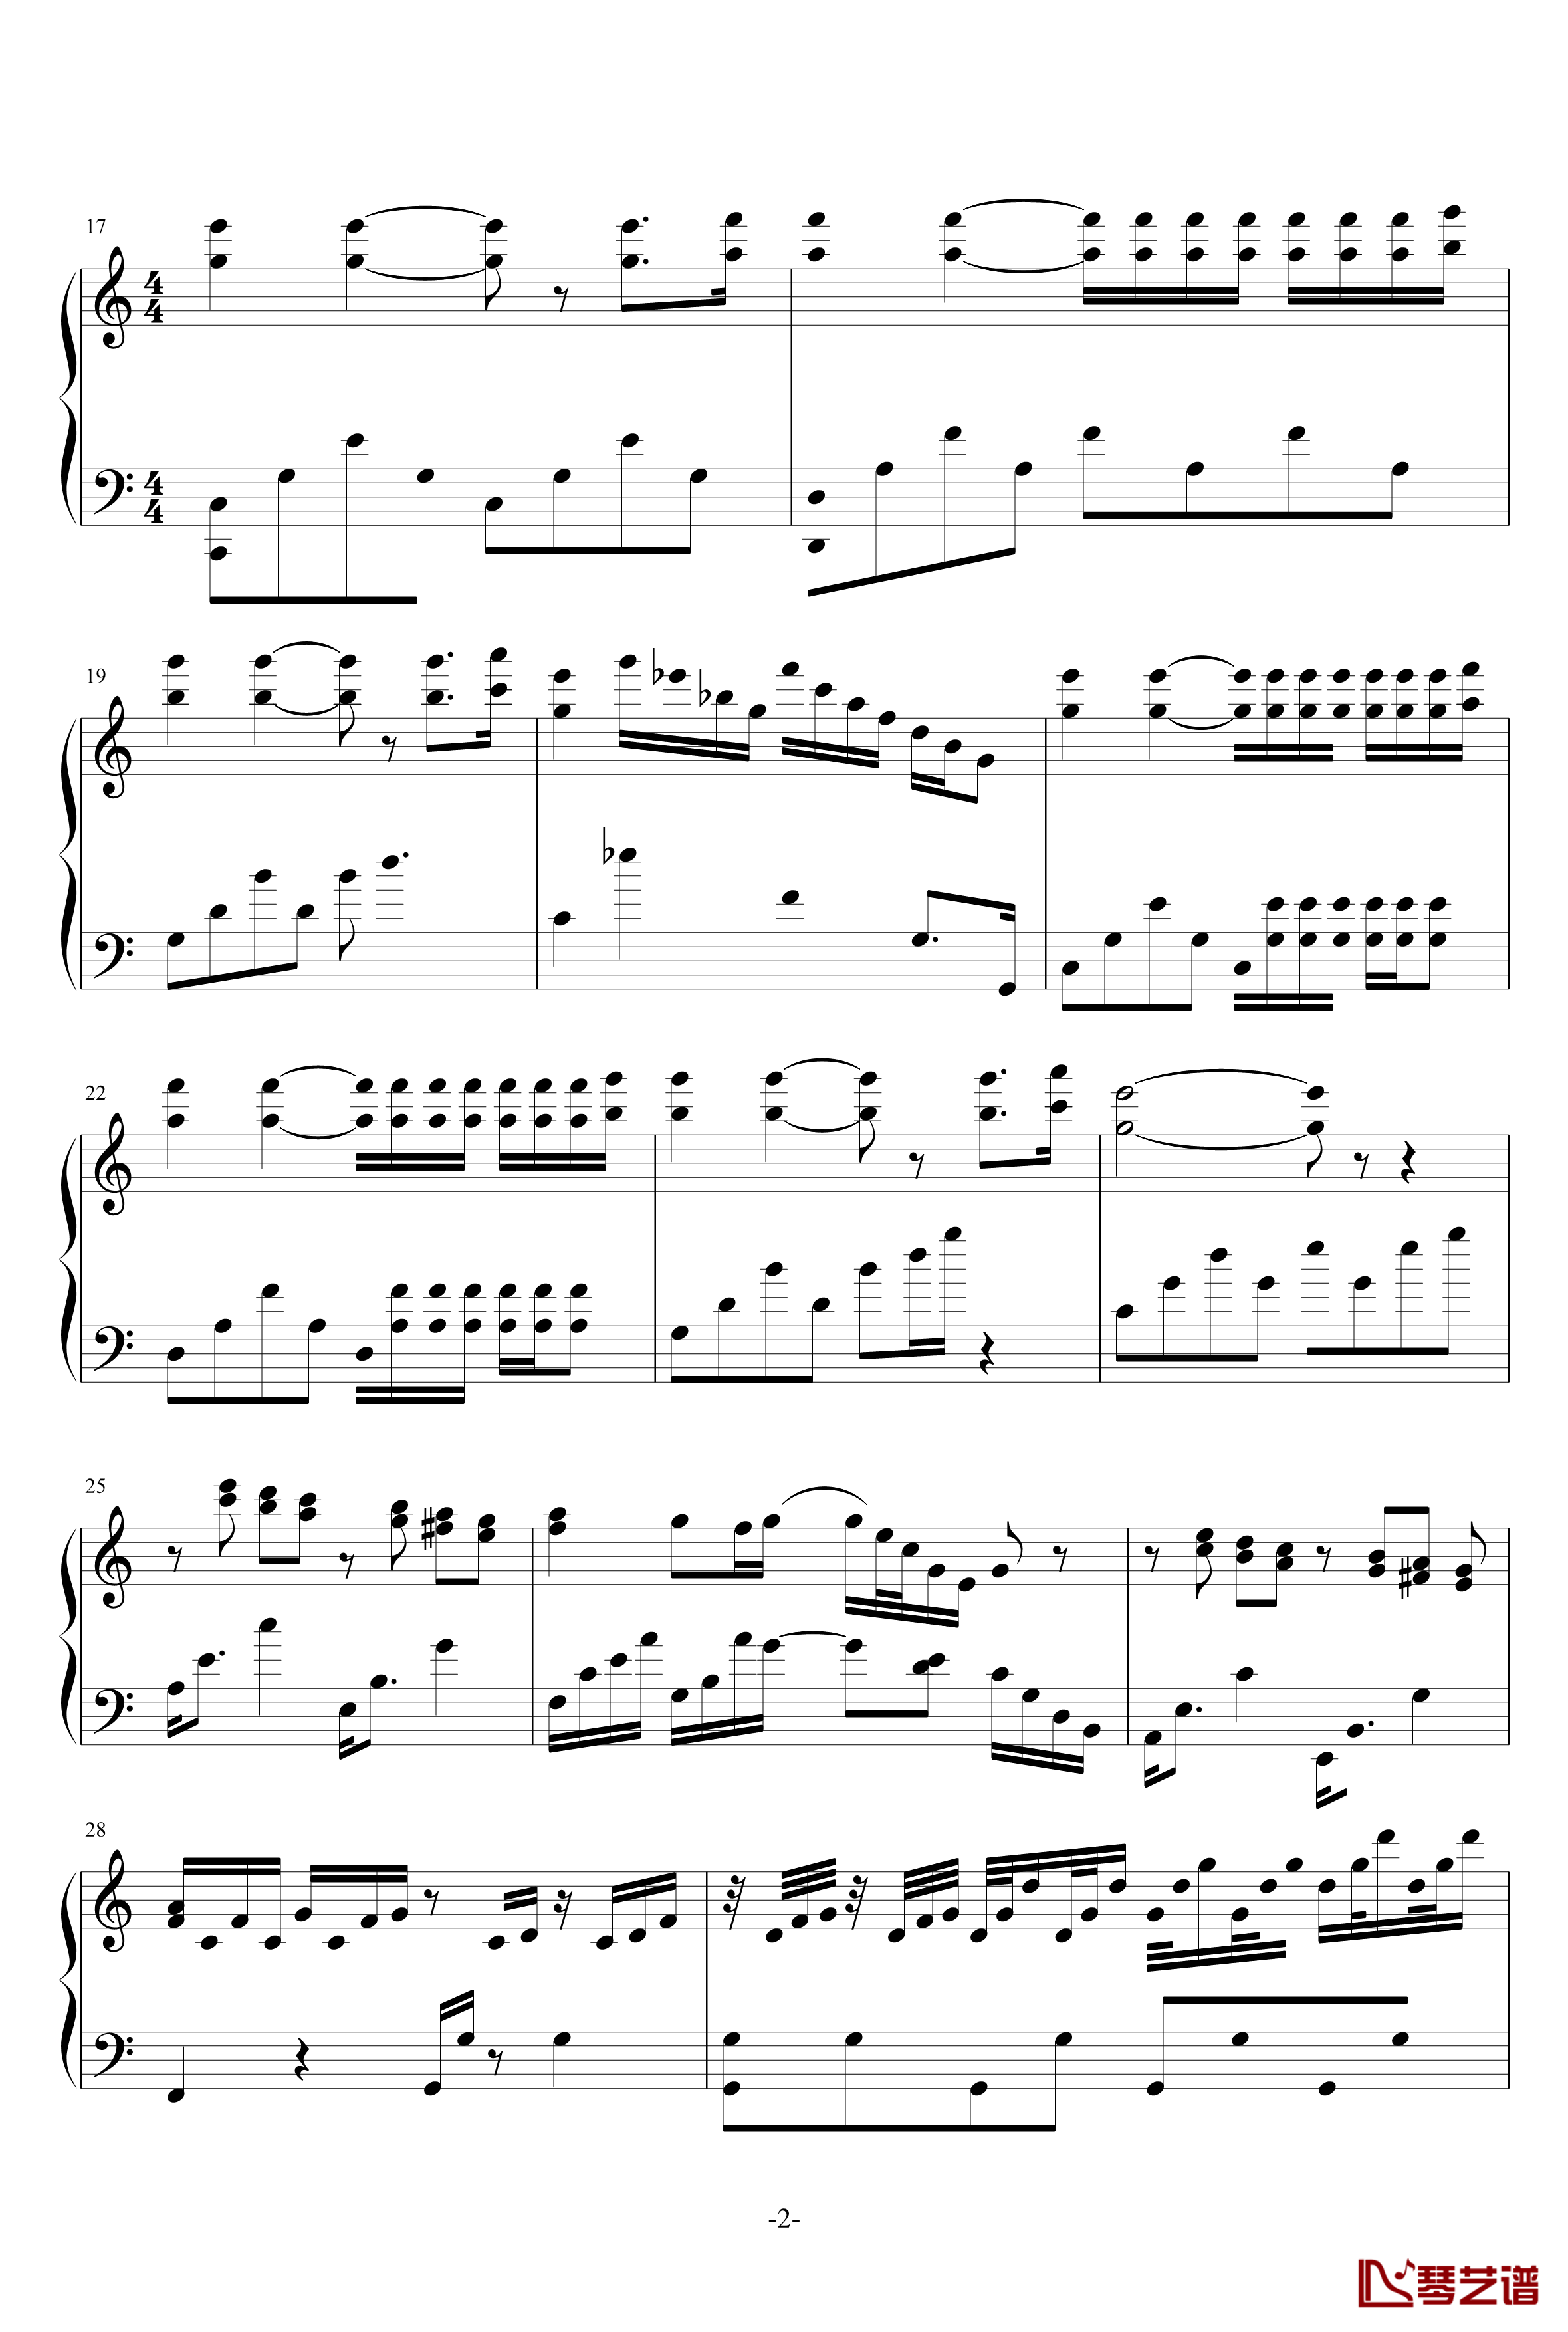 水边的阿狄丽娜钢琴谱-适当简化版-克莱德曼2